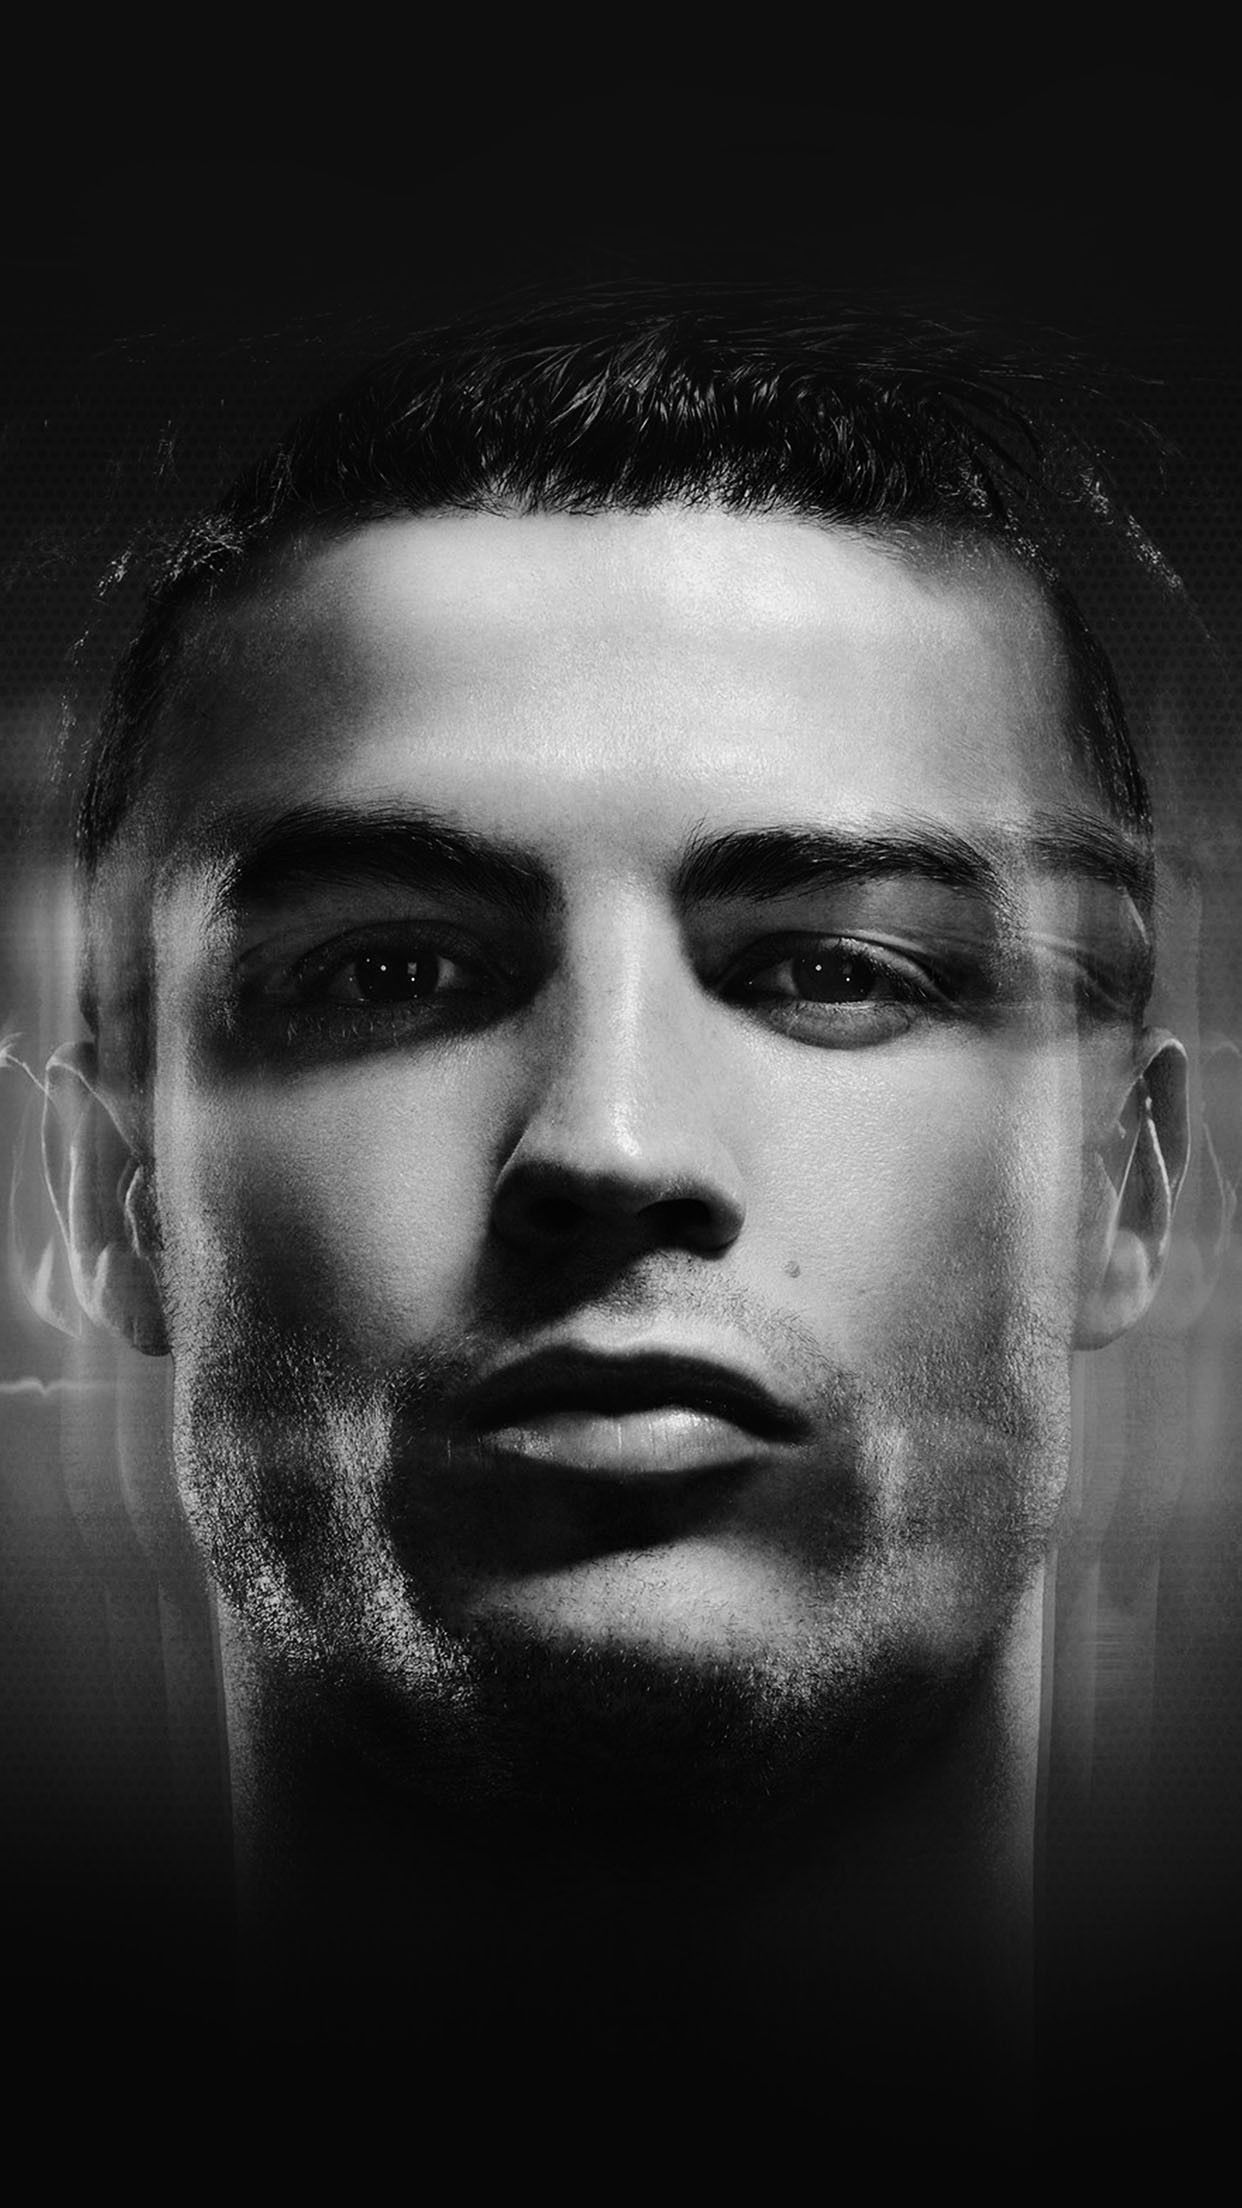 Cristiano Ronaldo Black and White Profile Smartphone Wallpaper and Lockscreen HD. Cristiano ronaldo, Cristiano ronaldo profile, Ronaldo